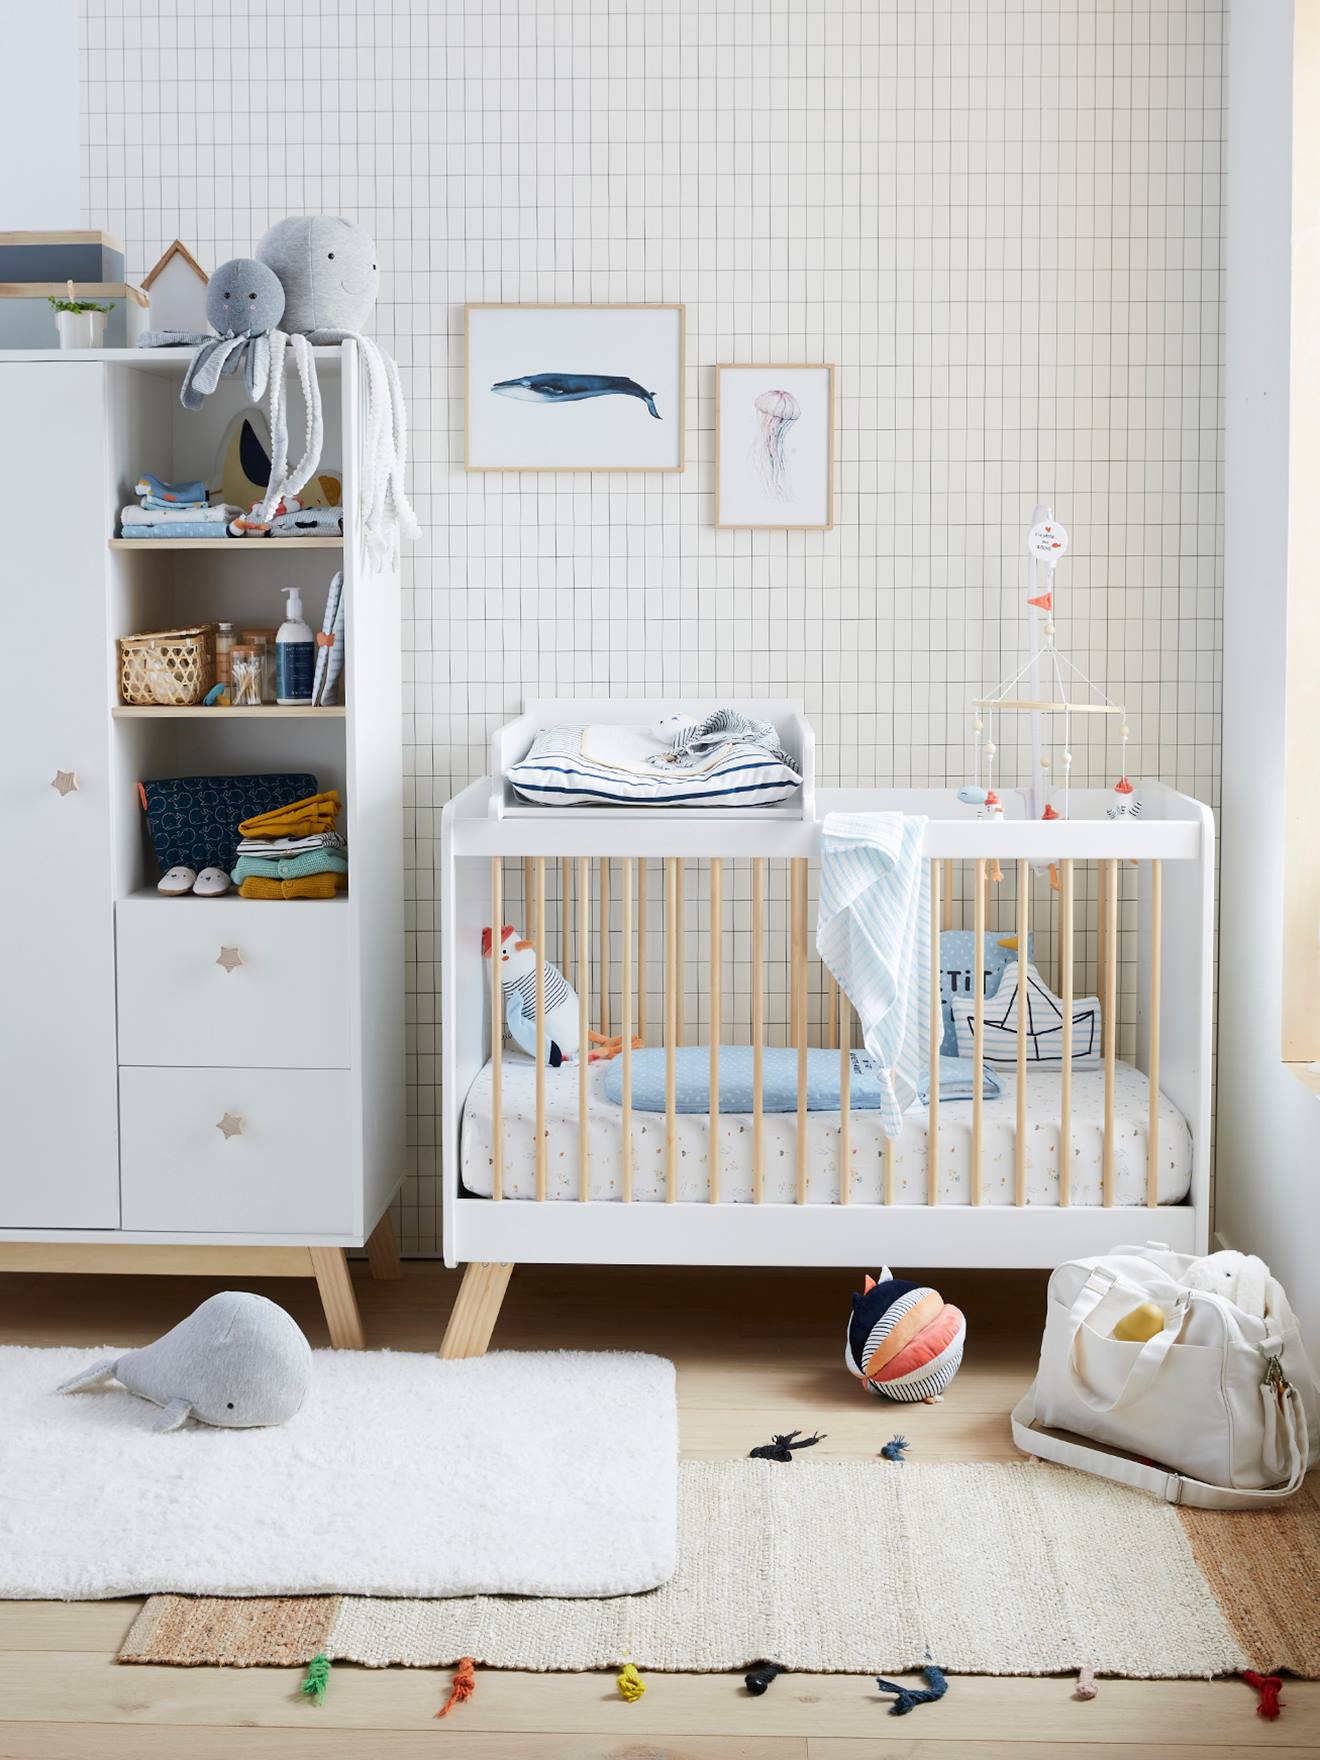 Alèse et protection de lit bébé et enfant - 70X140 - vertbaudet